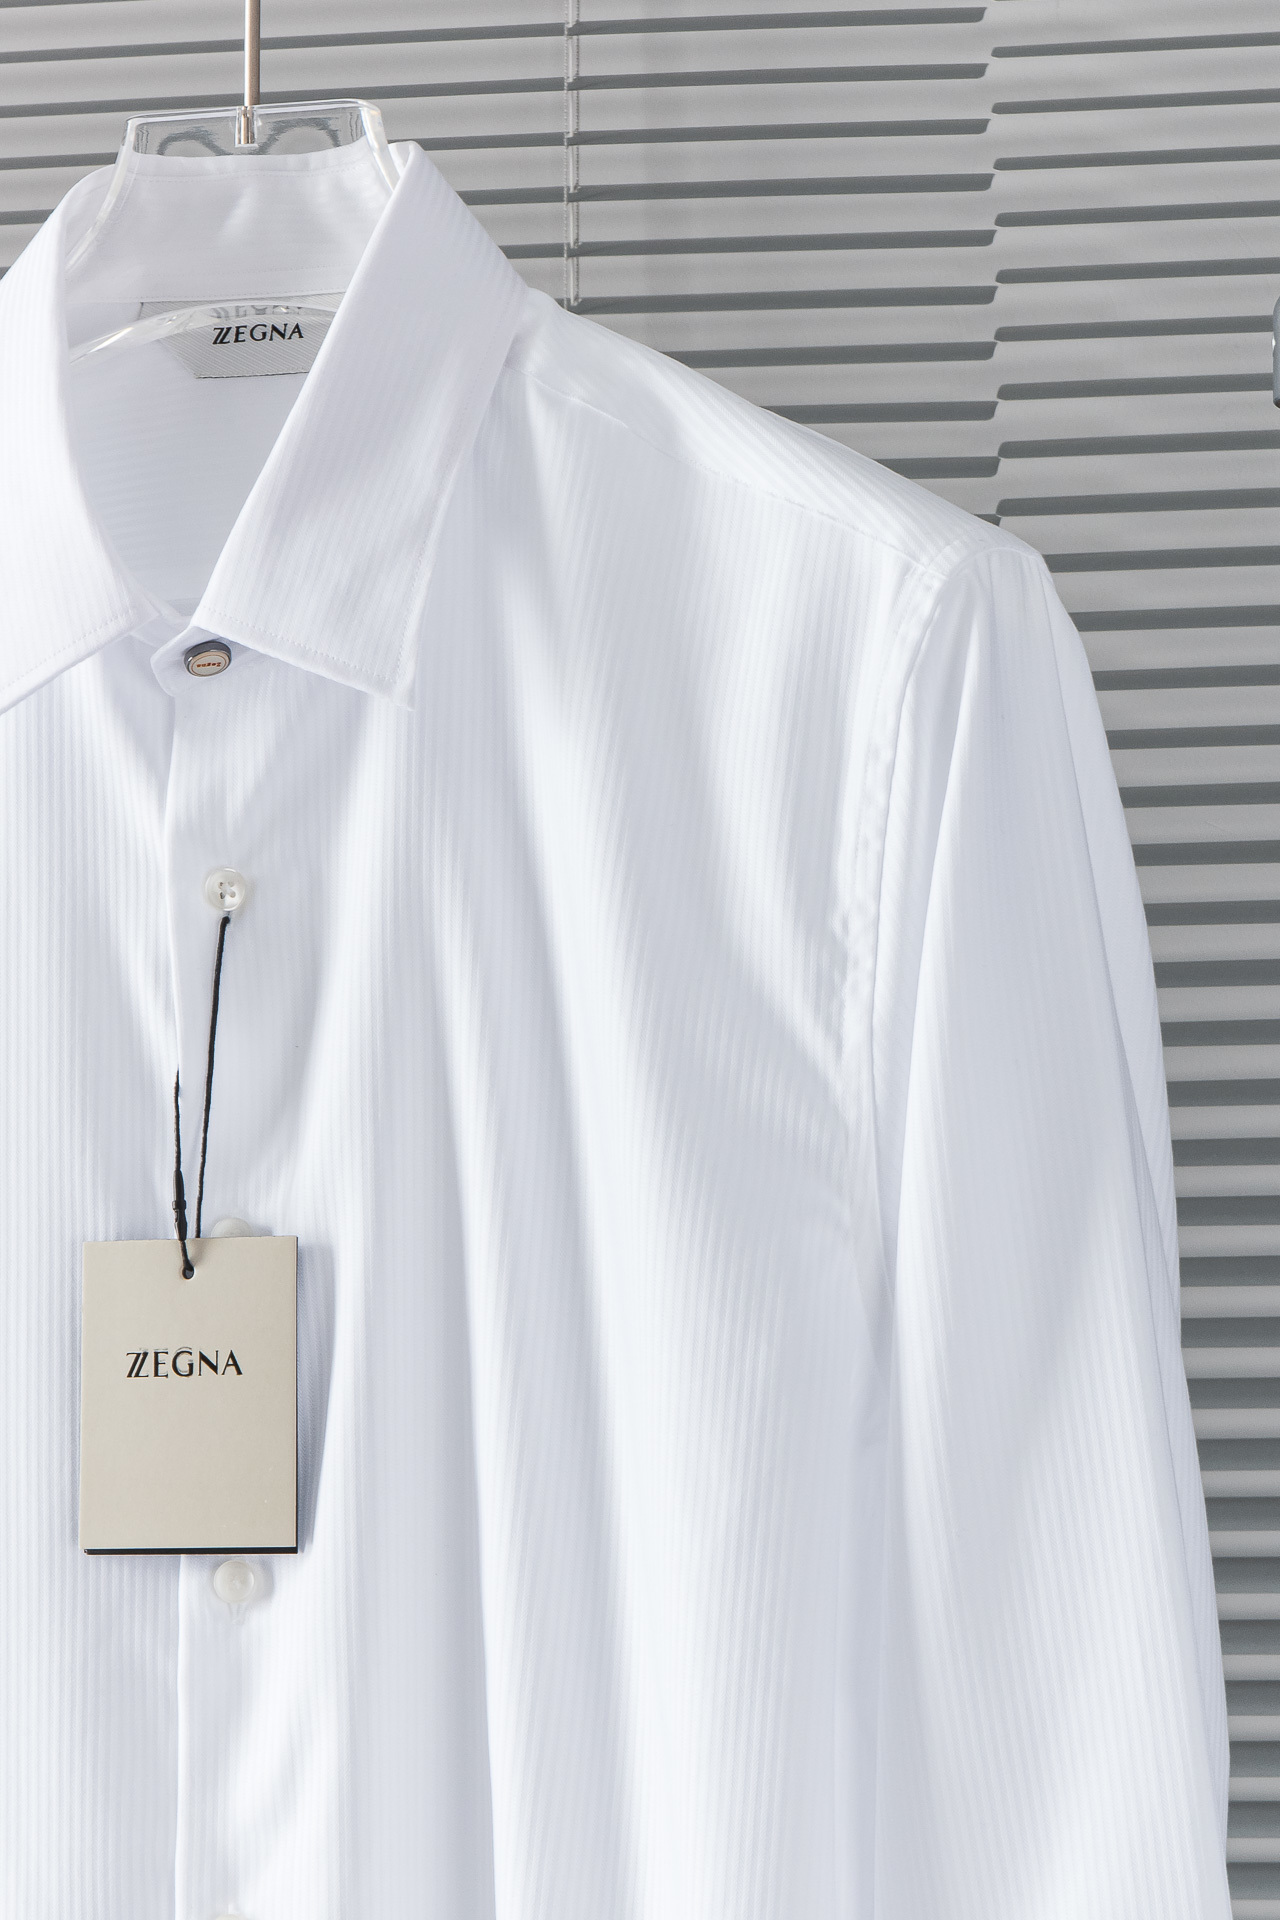 New#！！！杰尼亚ZEGNA高品质的珍藏级进口高织棉男士条纹长袖衬衫!24FW秋冬新款高品质的奢品者首